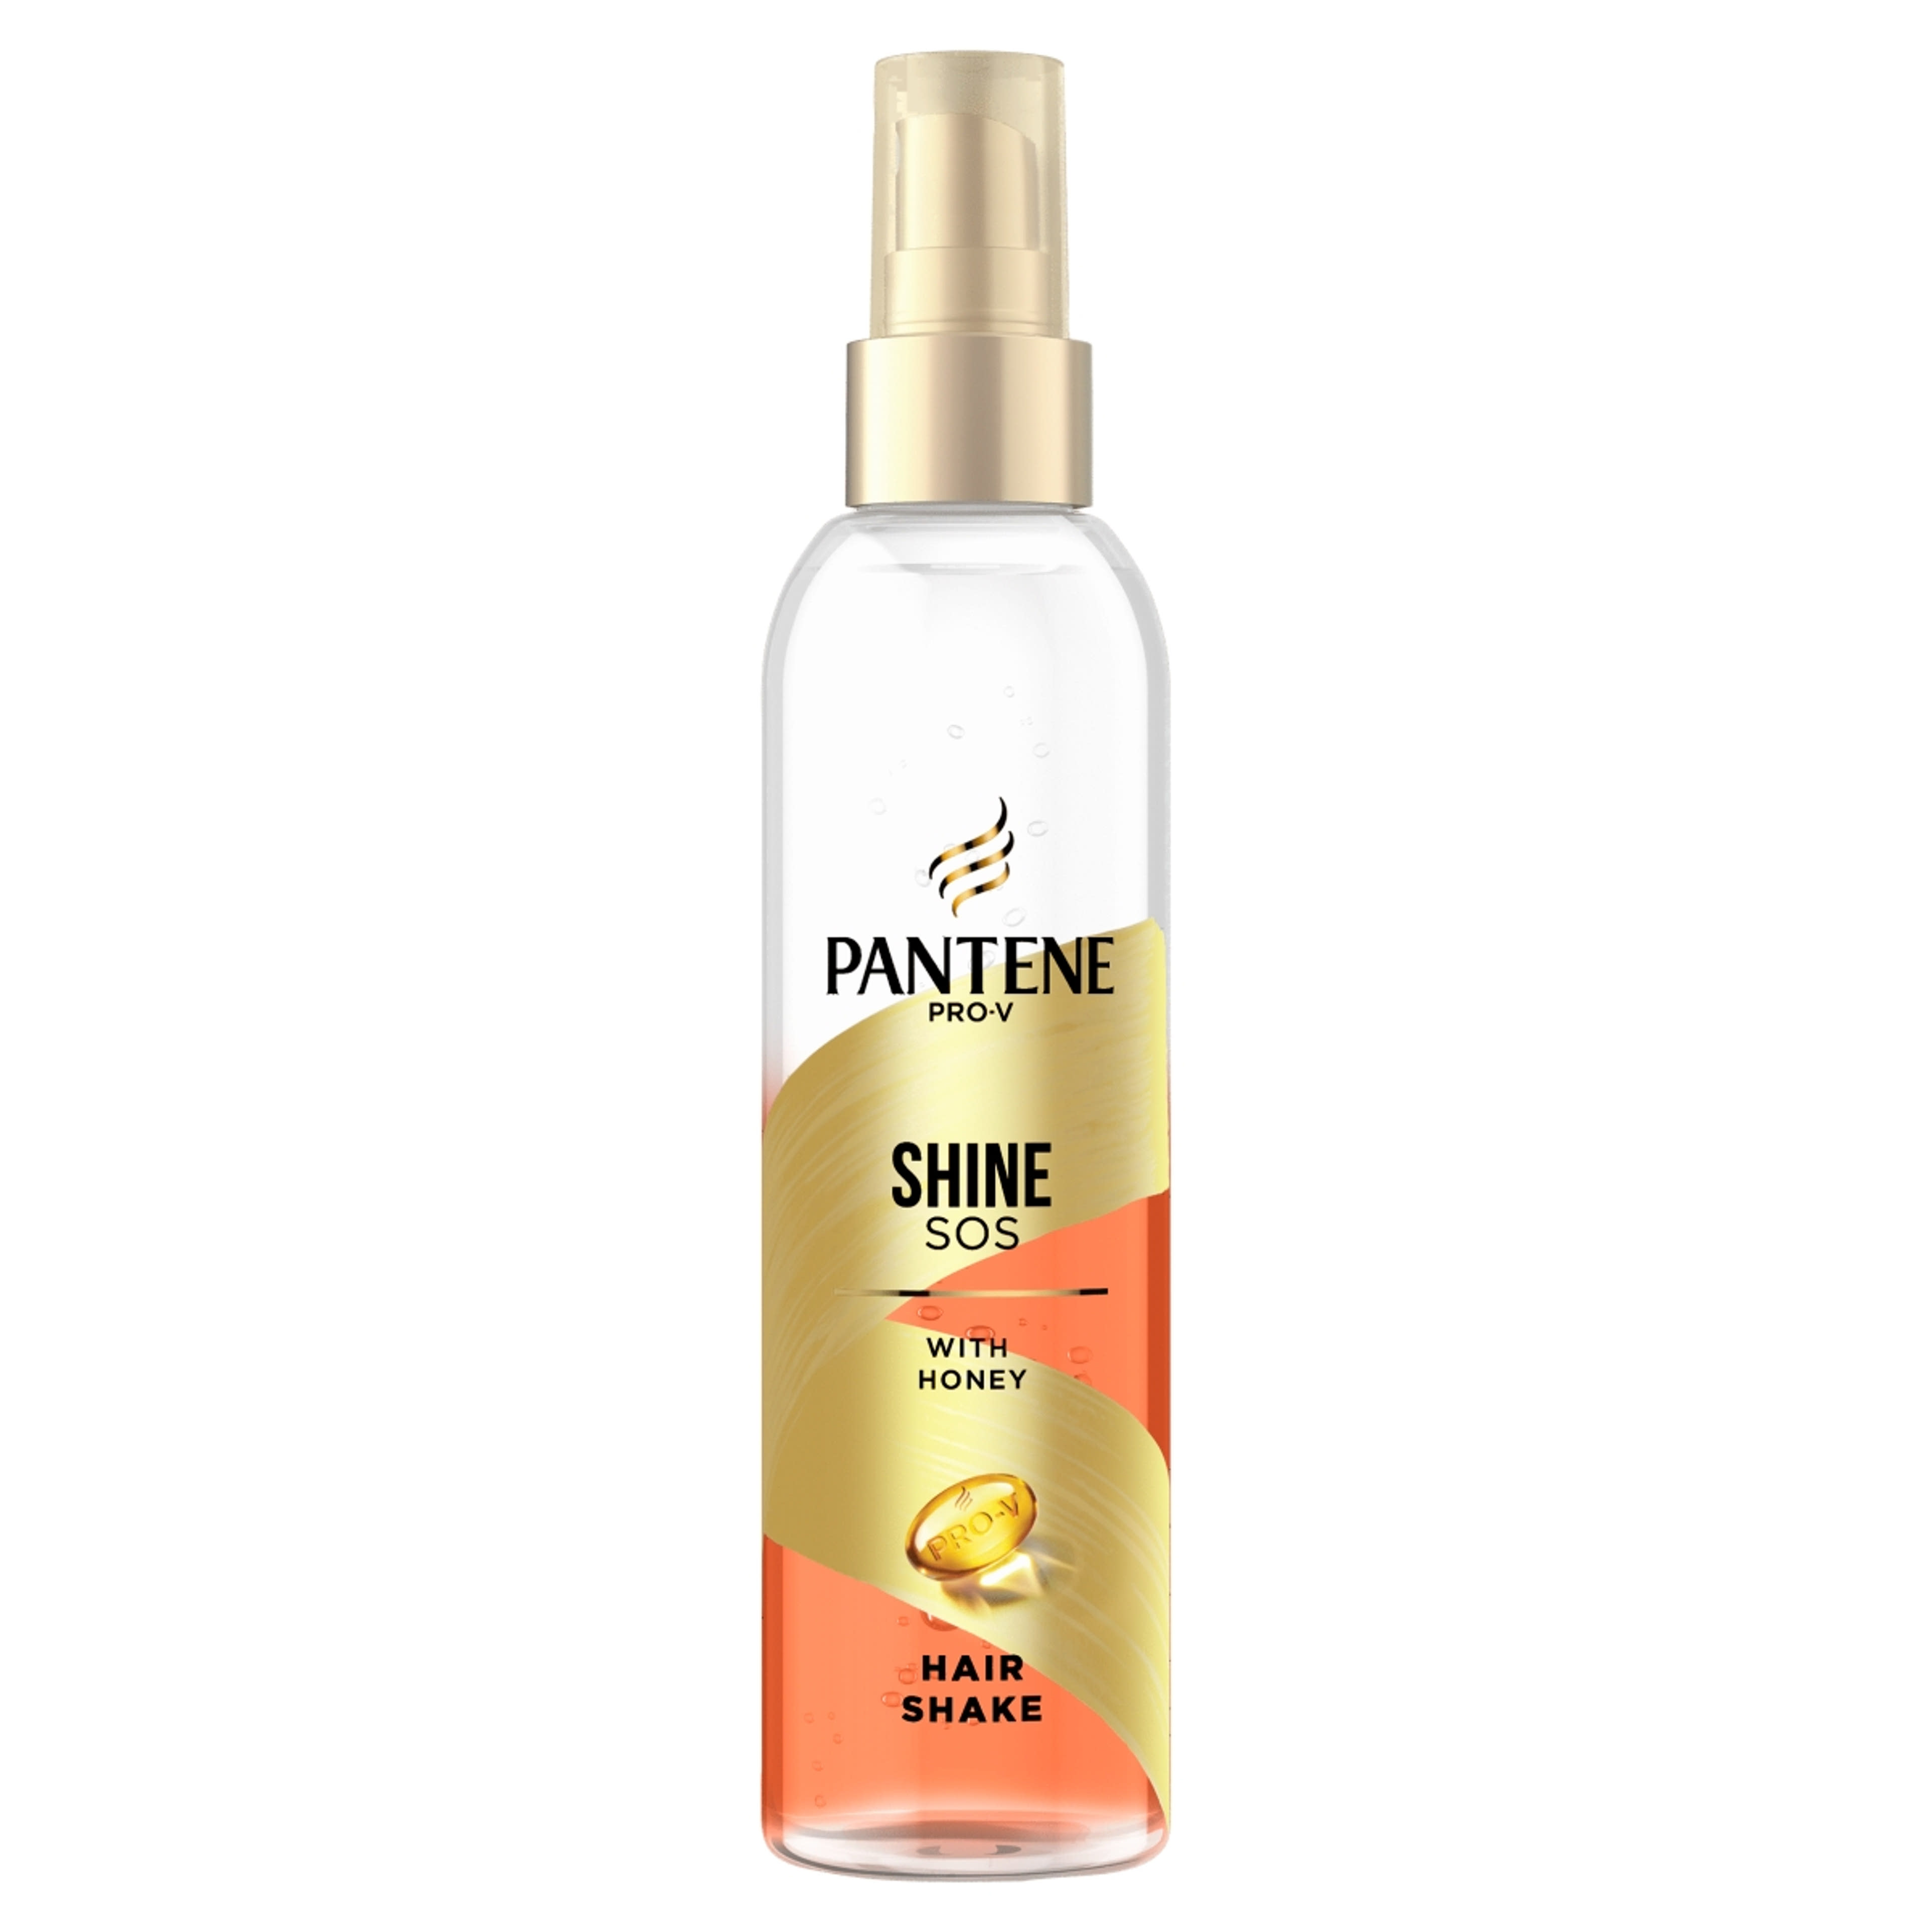 Pantene hair rescue shaker repair - 150 ml